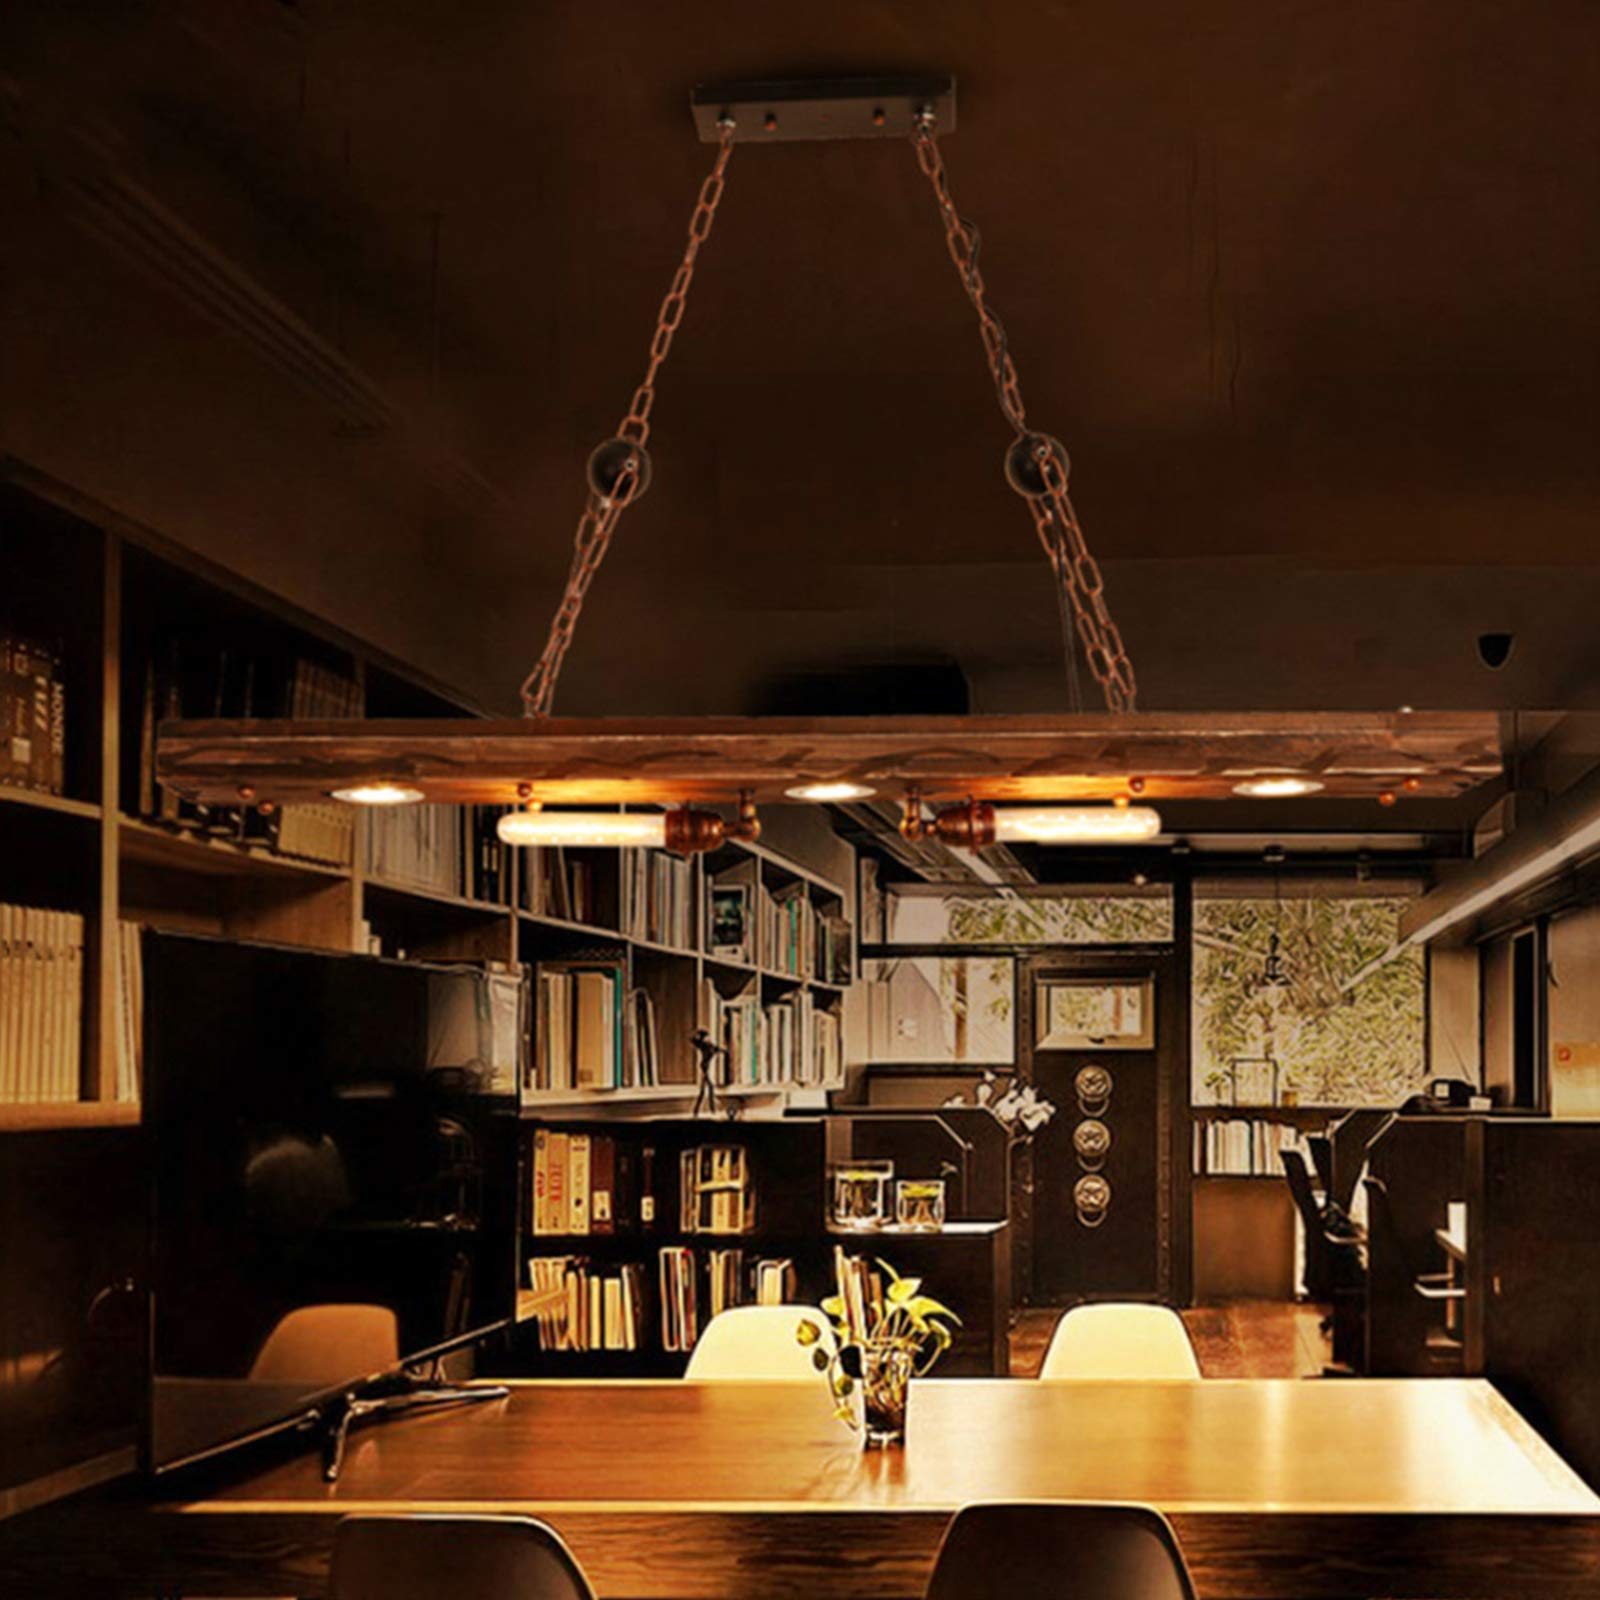 Lampadario in legno vintage, con una combinazione di legno + ferro nero, adatto a ristoranti, bar, salotti.